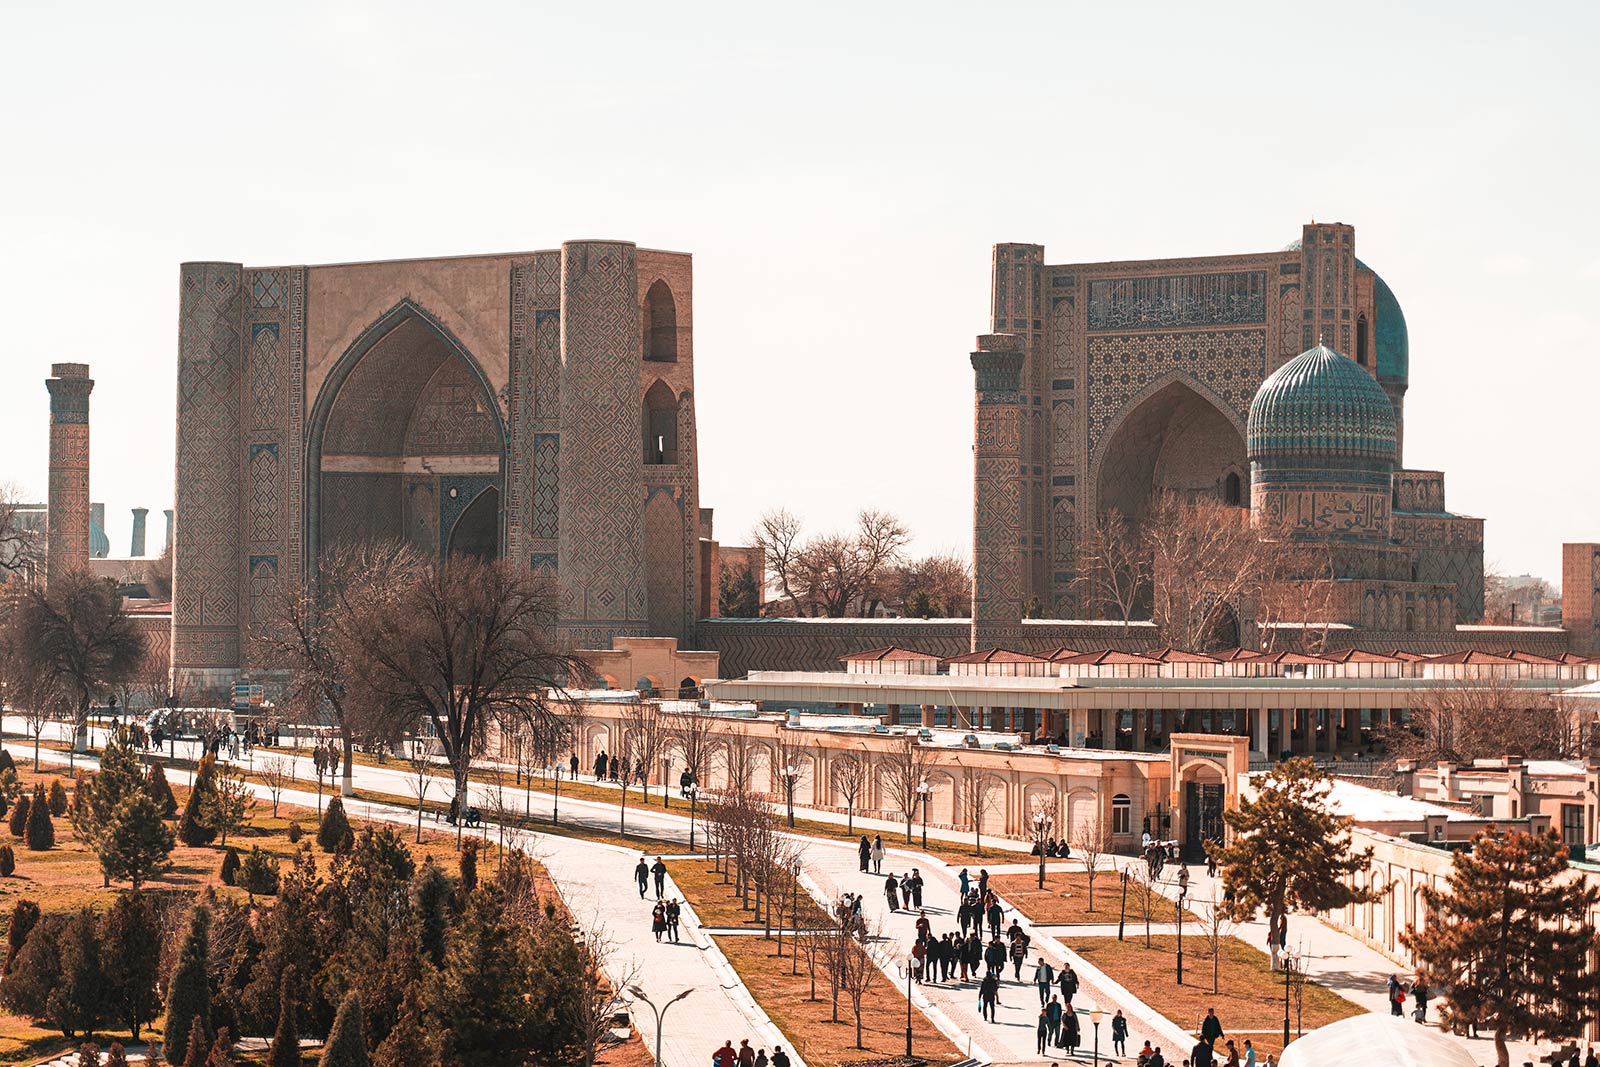 Registan in Samarkand, Uzbekistan. A day in stunning Samarkand